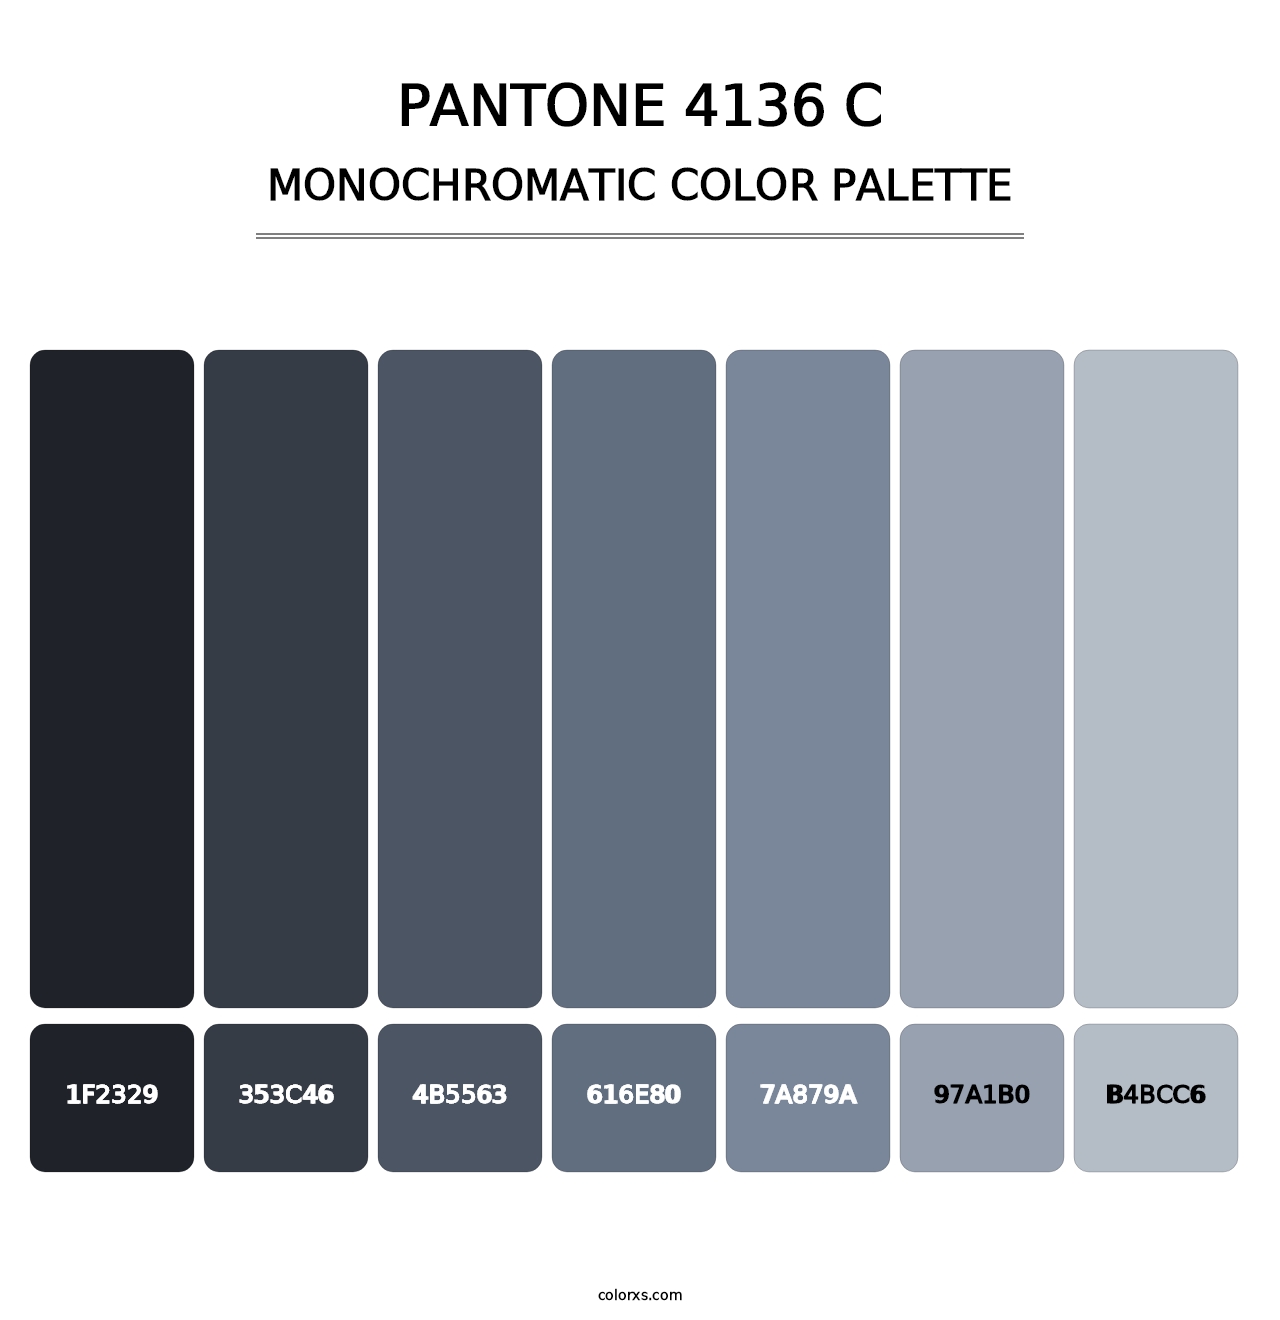 PANTONE 4136 C - Monochromatic Color Palette